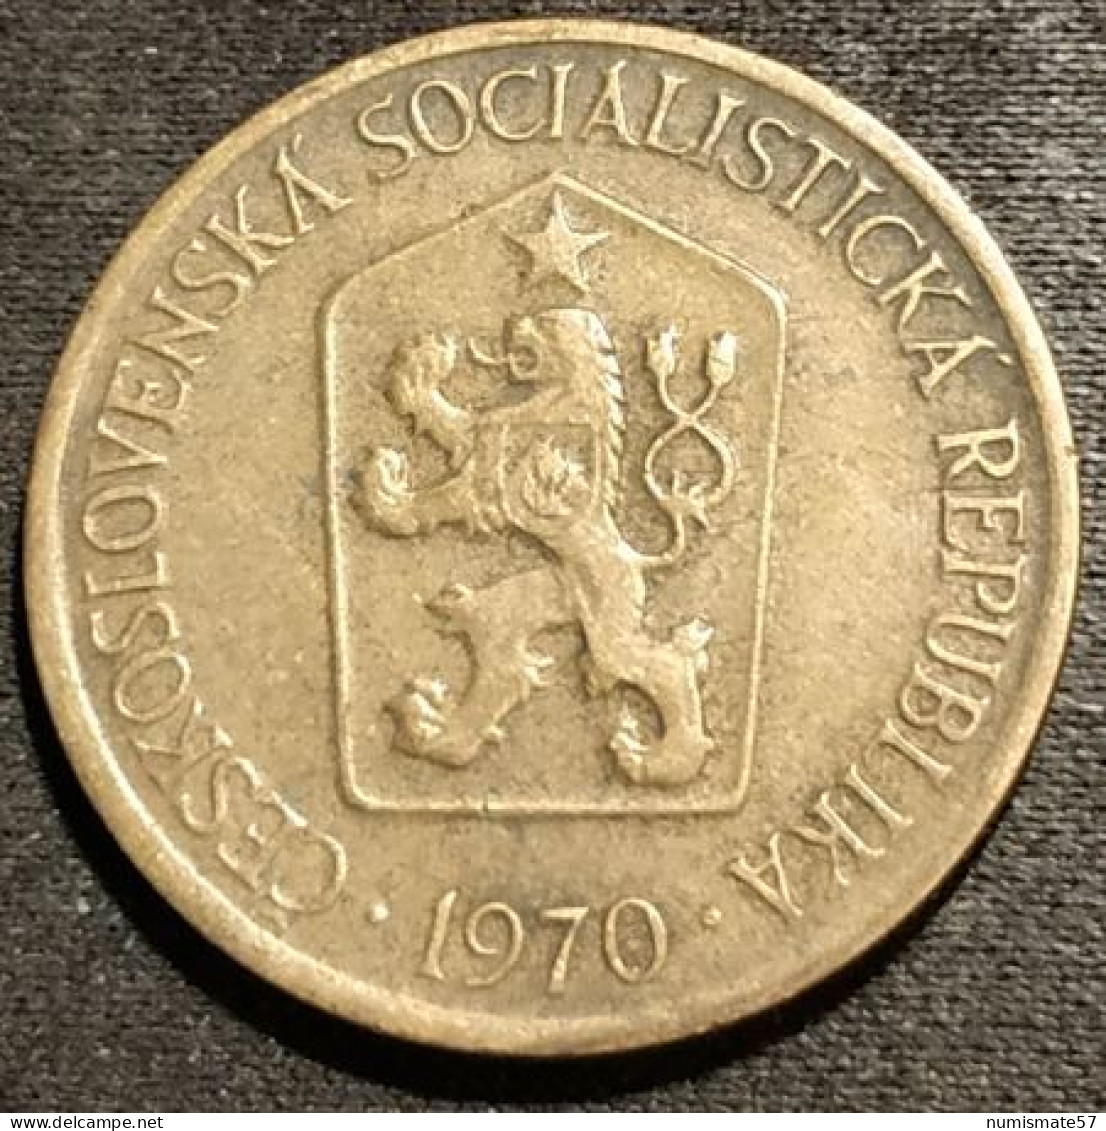 TCHECOSLOVAQUIE - Czechoslovakia - 1 KORUNA 1970 - KM 50 - Tchécoslovaquie